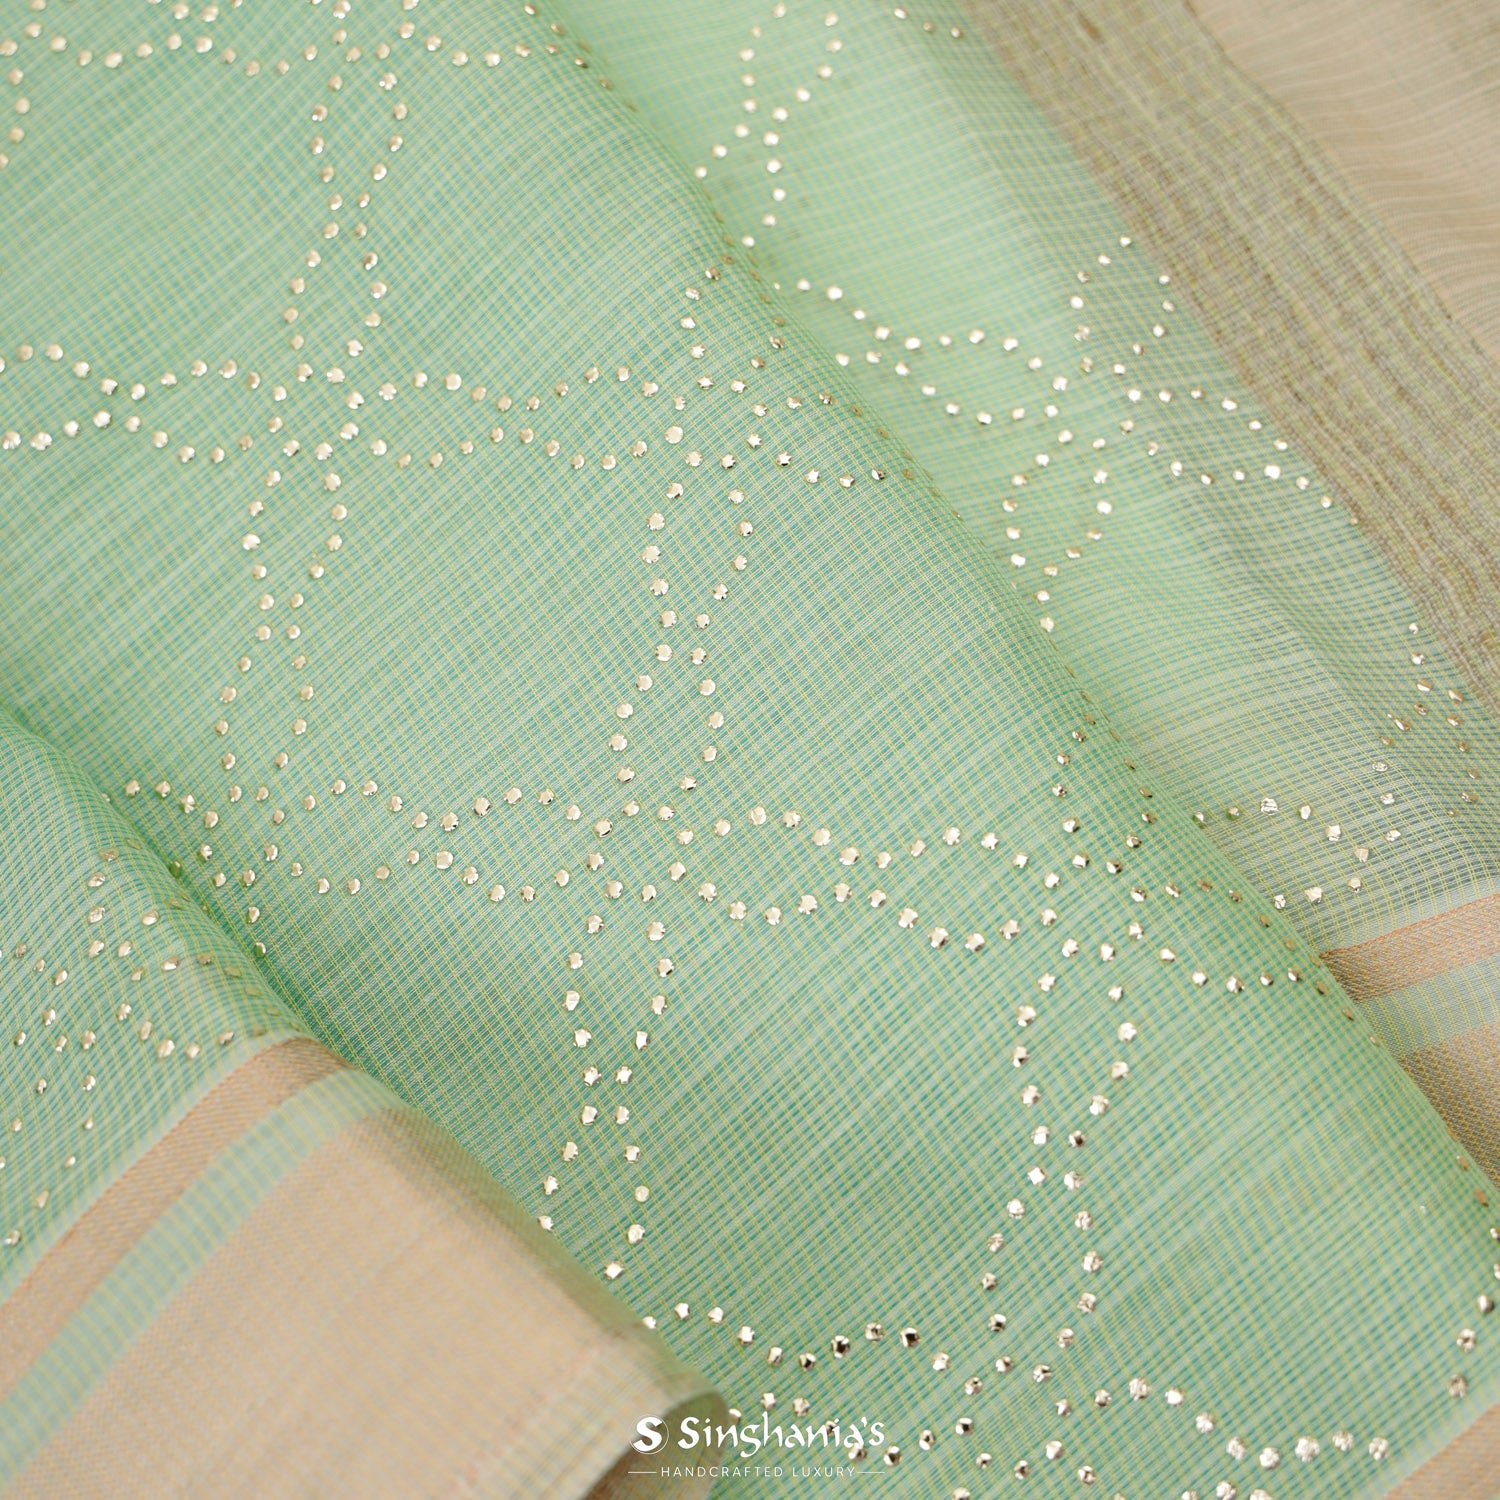 Celadon Green Kota Silk Saree With Mukaish Work In Floral Grid Pattern